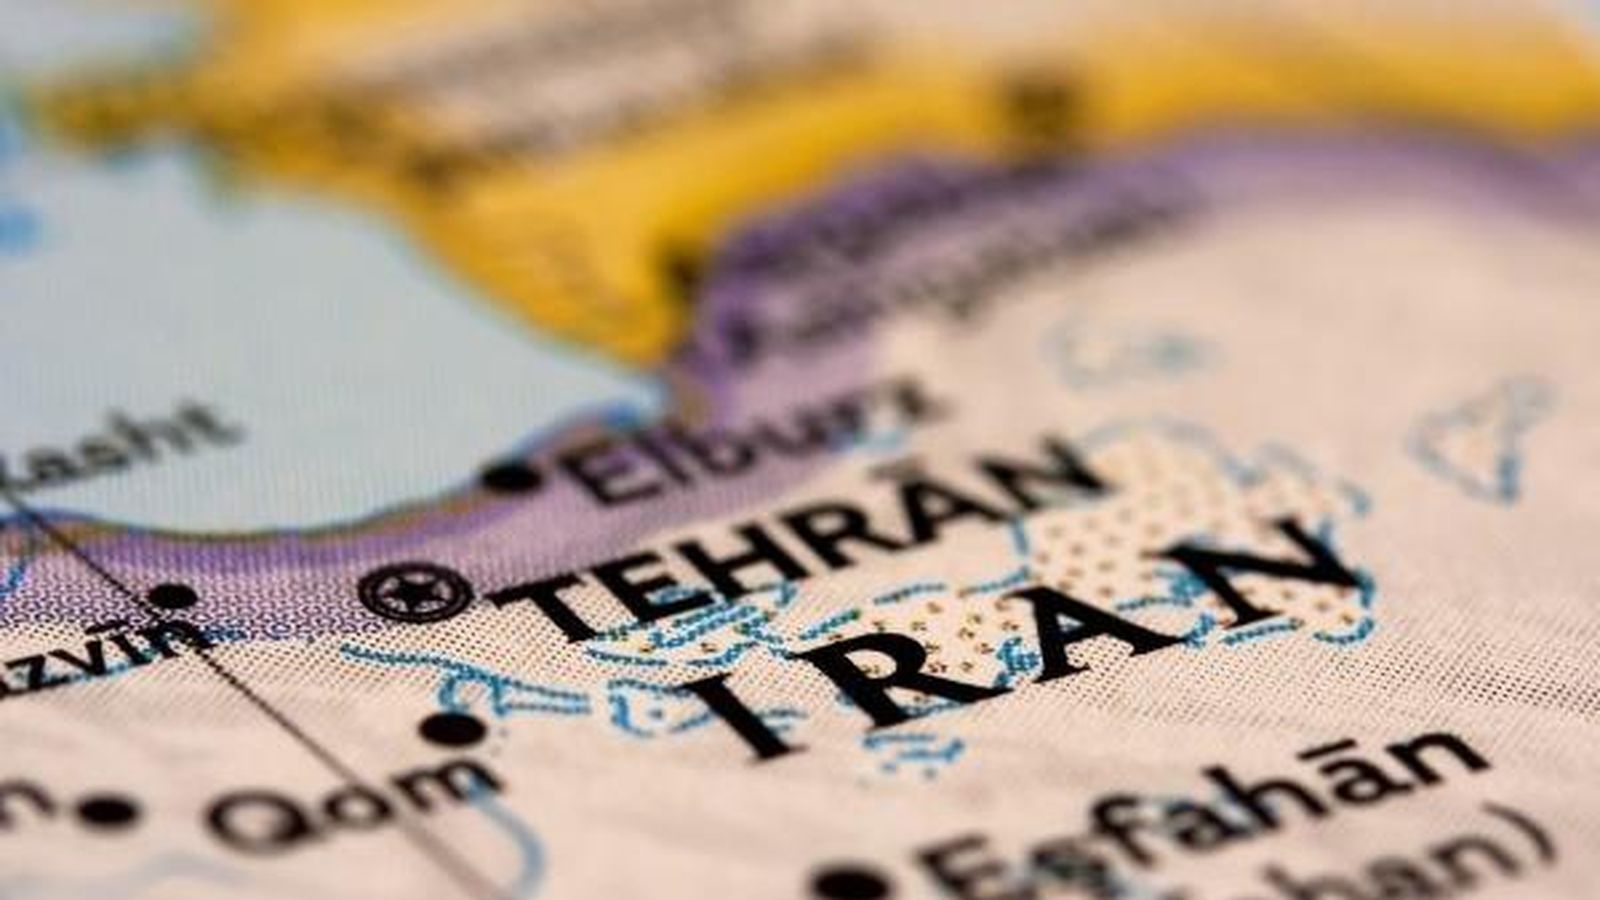 Rakúsko vyzvalo svojich občanov, aby necestovali do Iránu, prípadne ho bezodkladne opustili